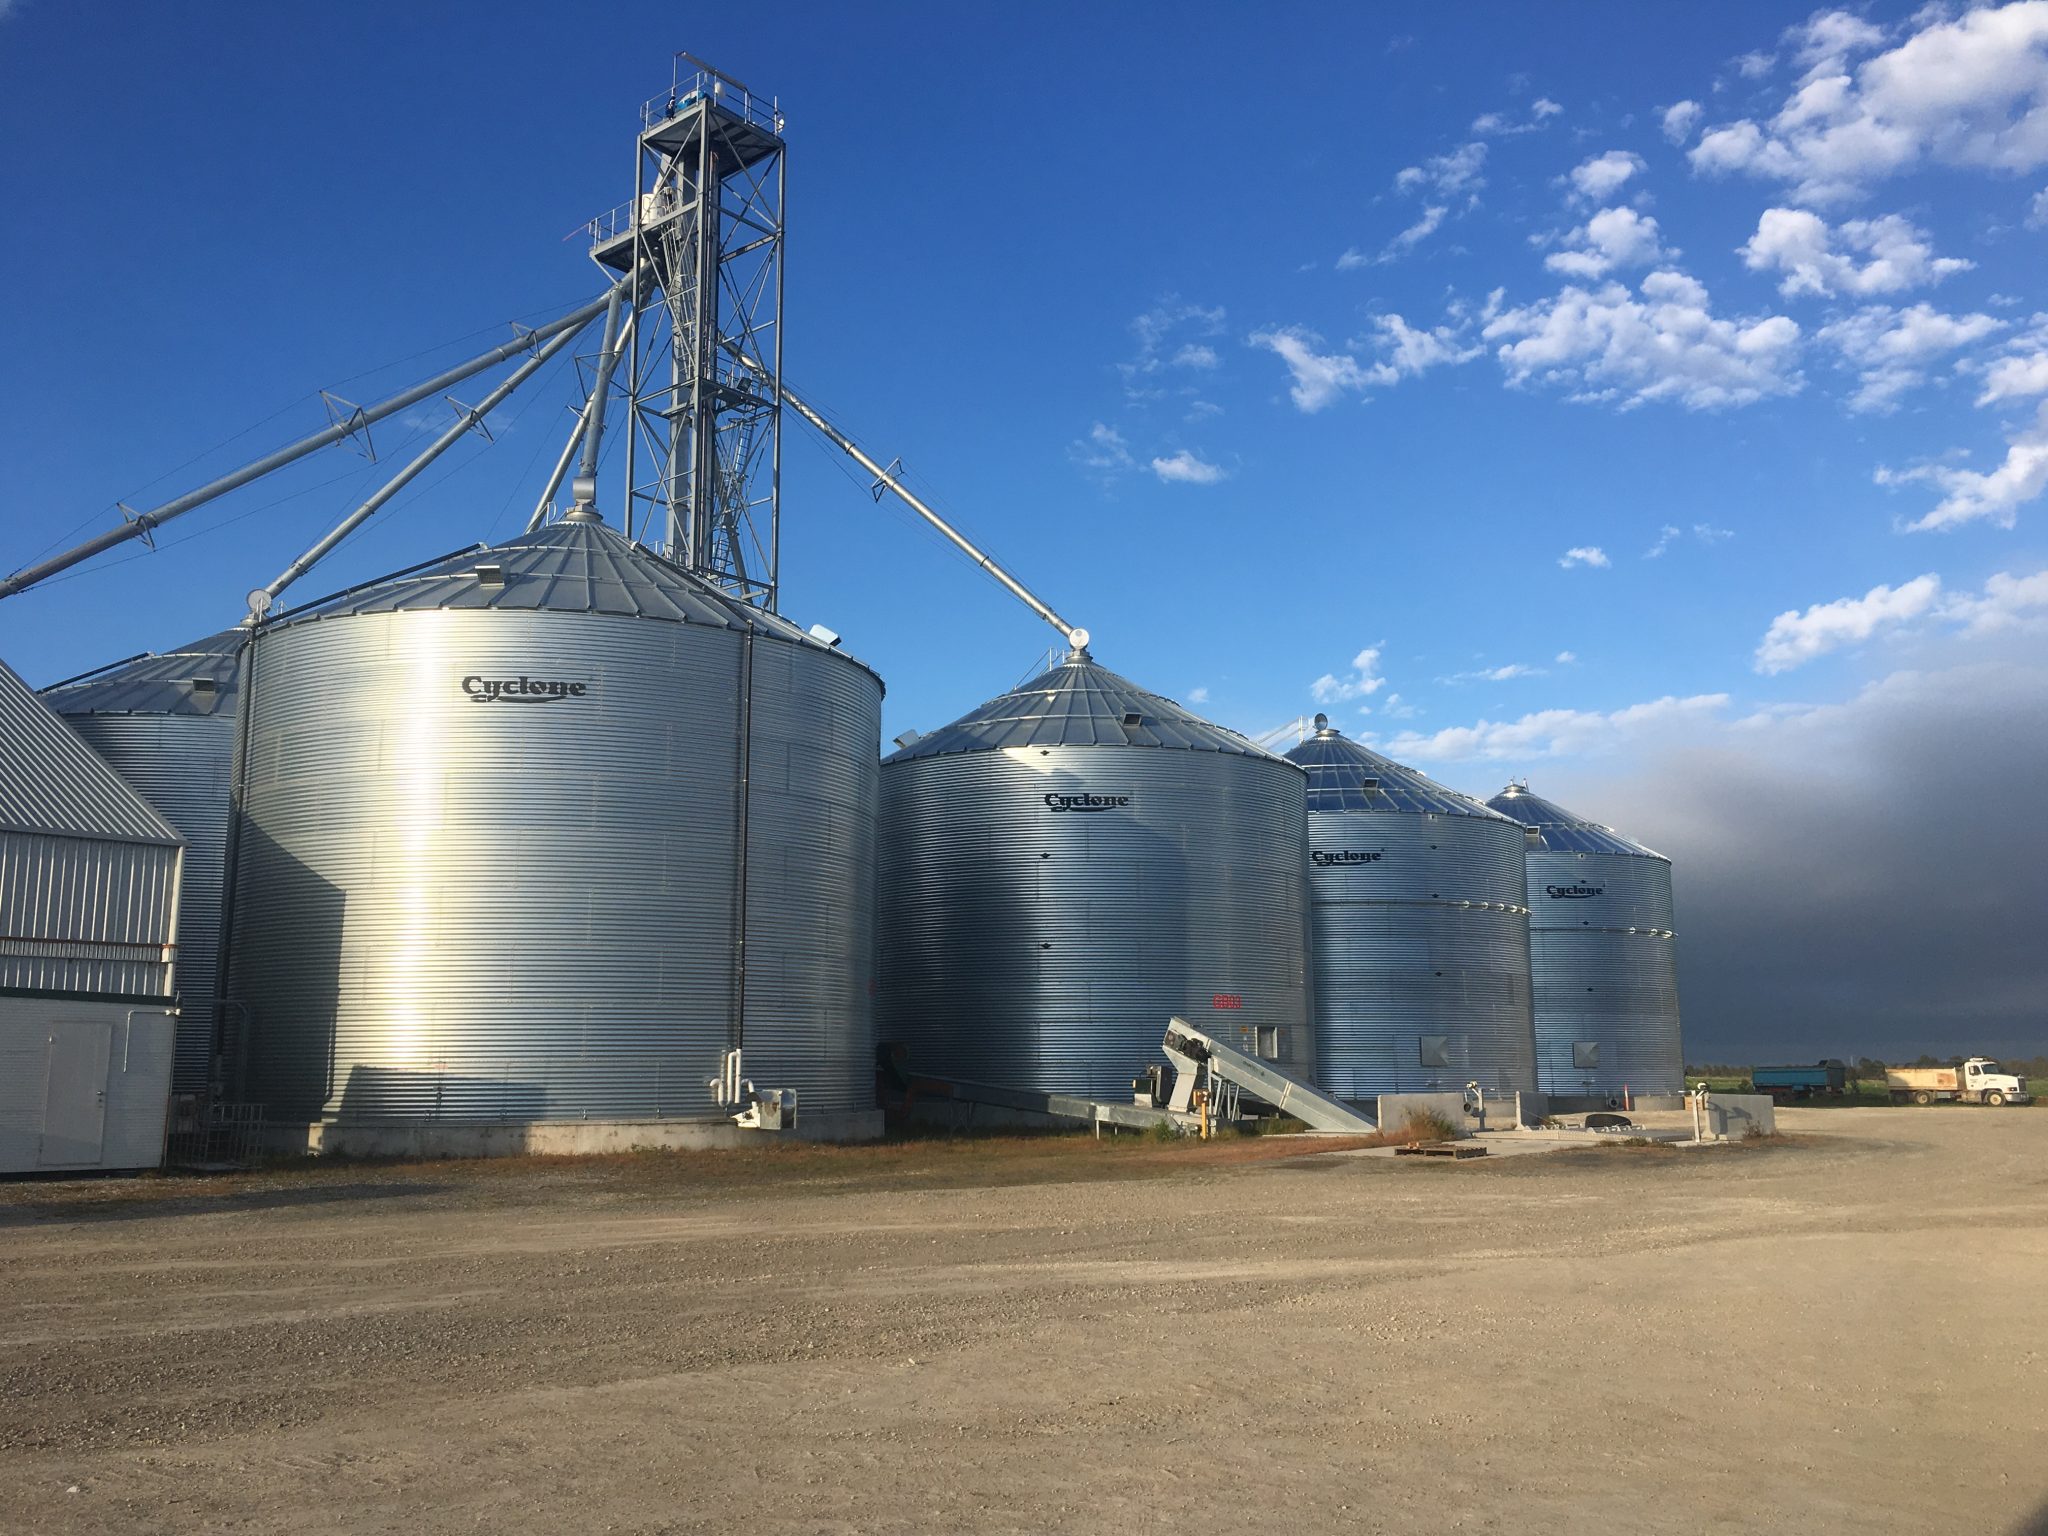 The Silo Construction Company on farm grain storage